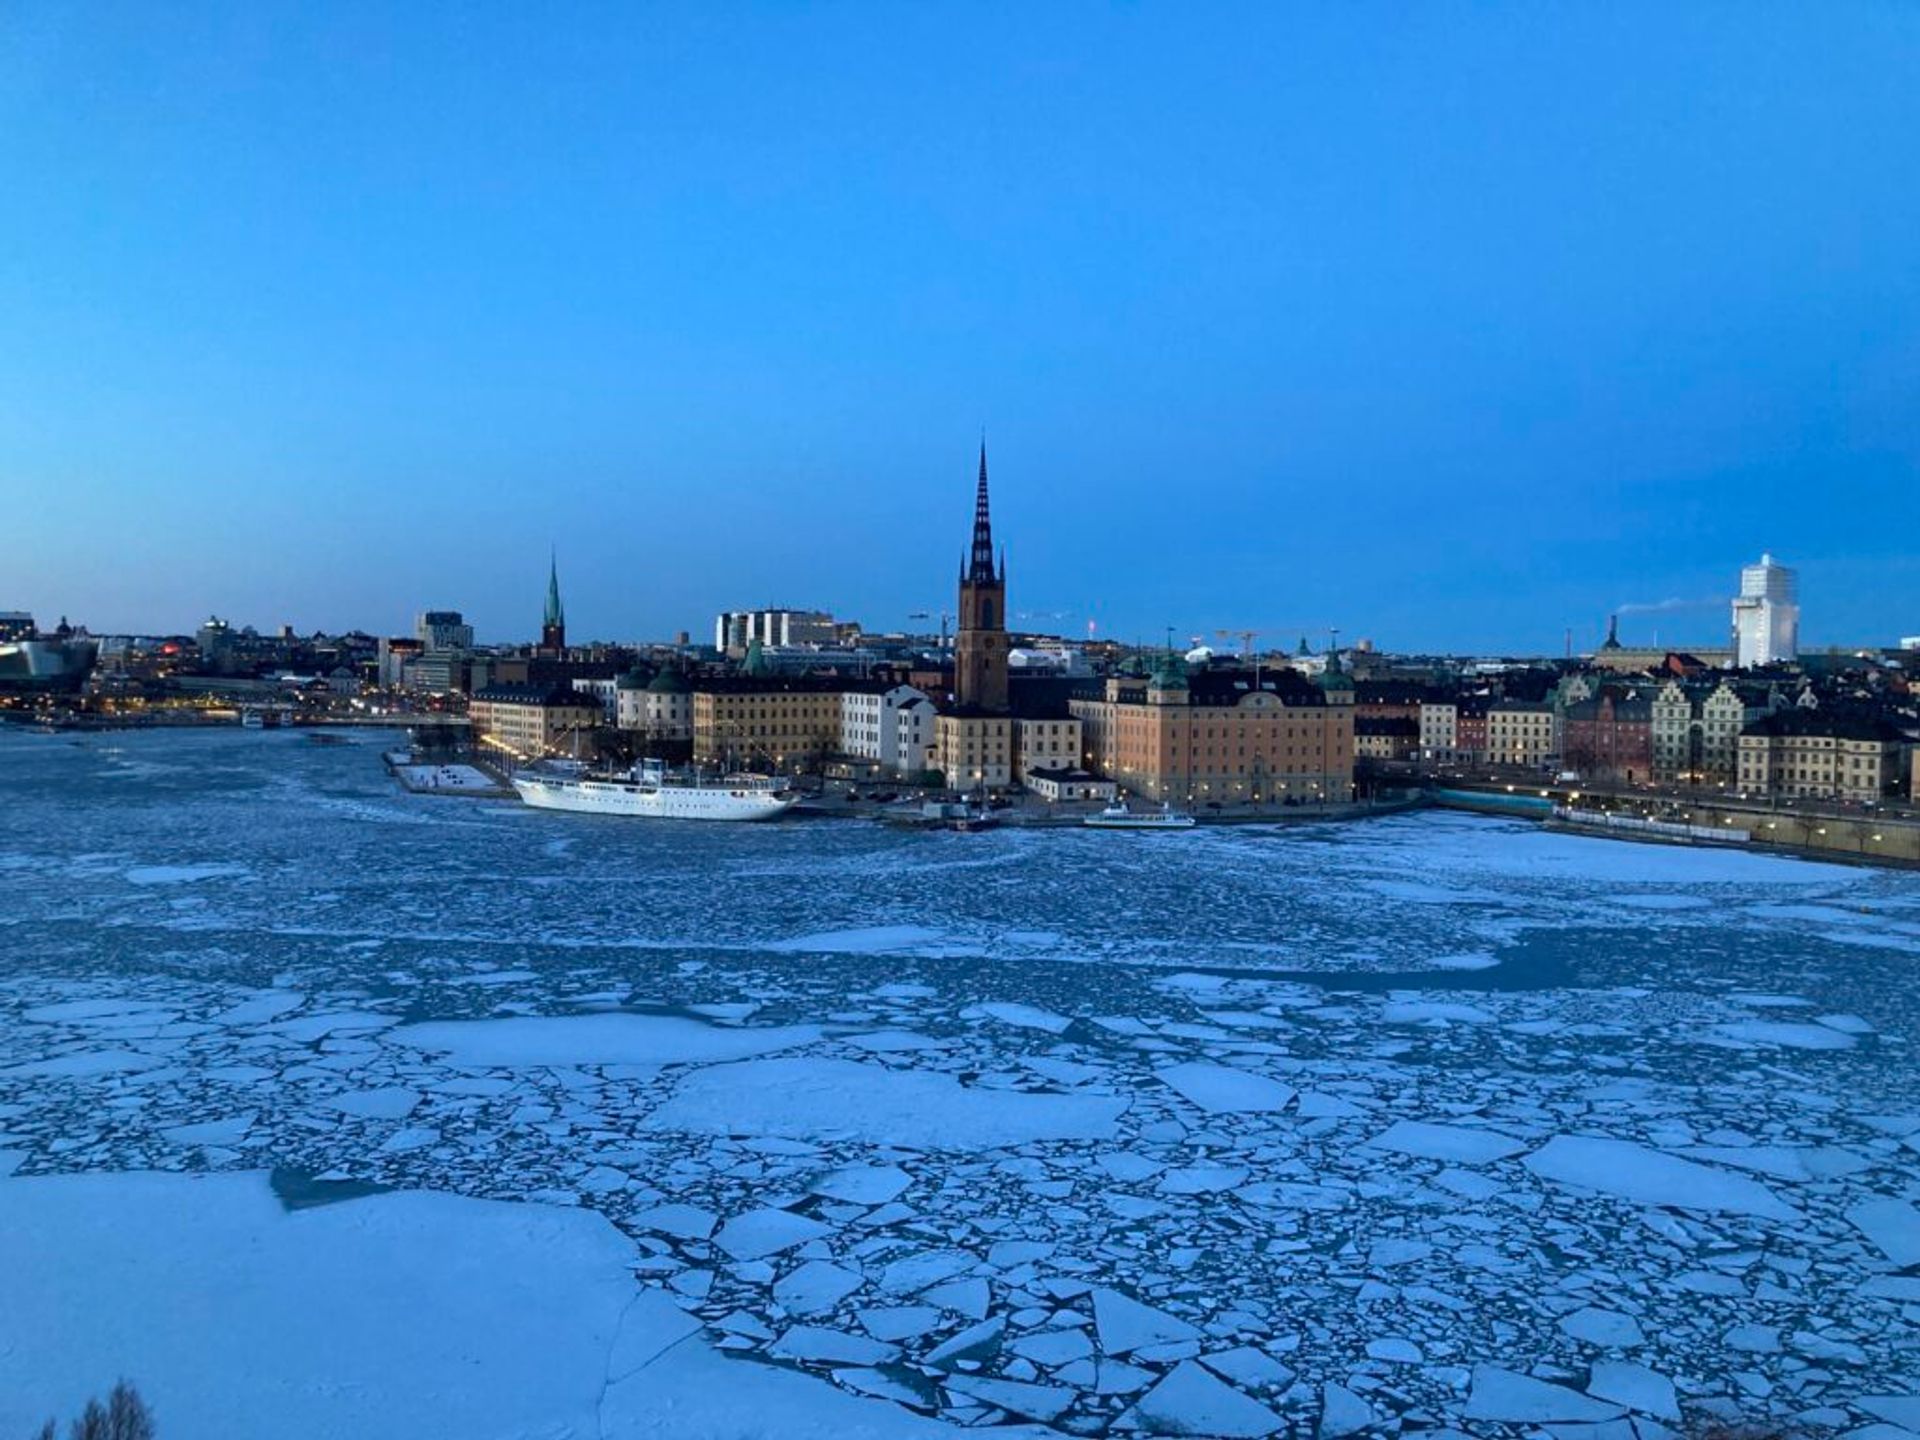 Stockholm's city landscape during winter.